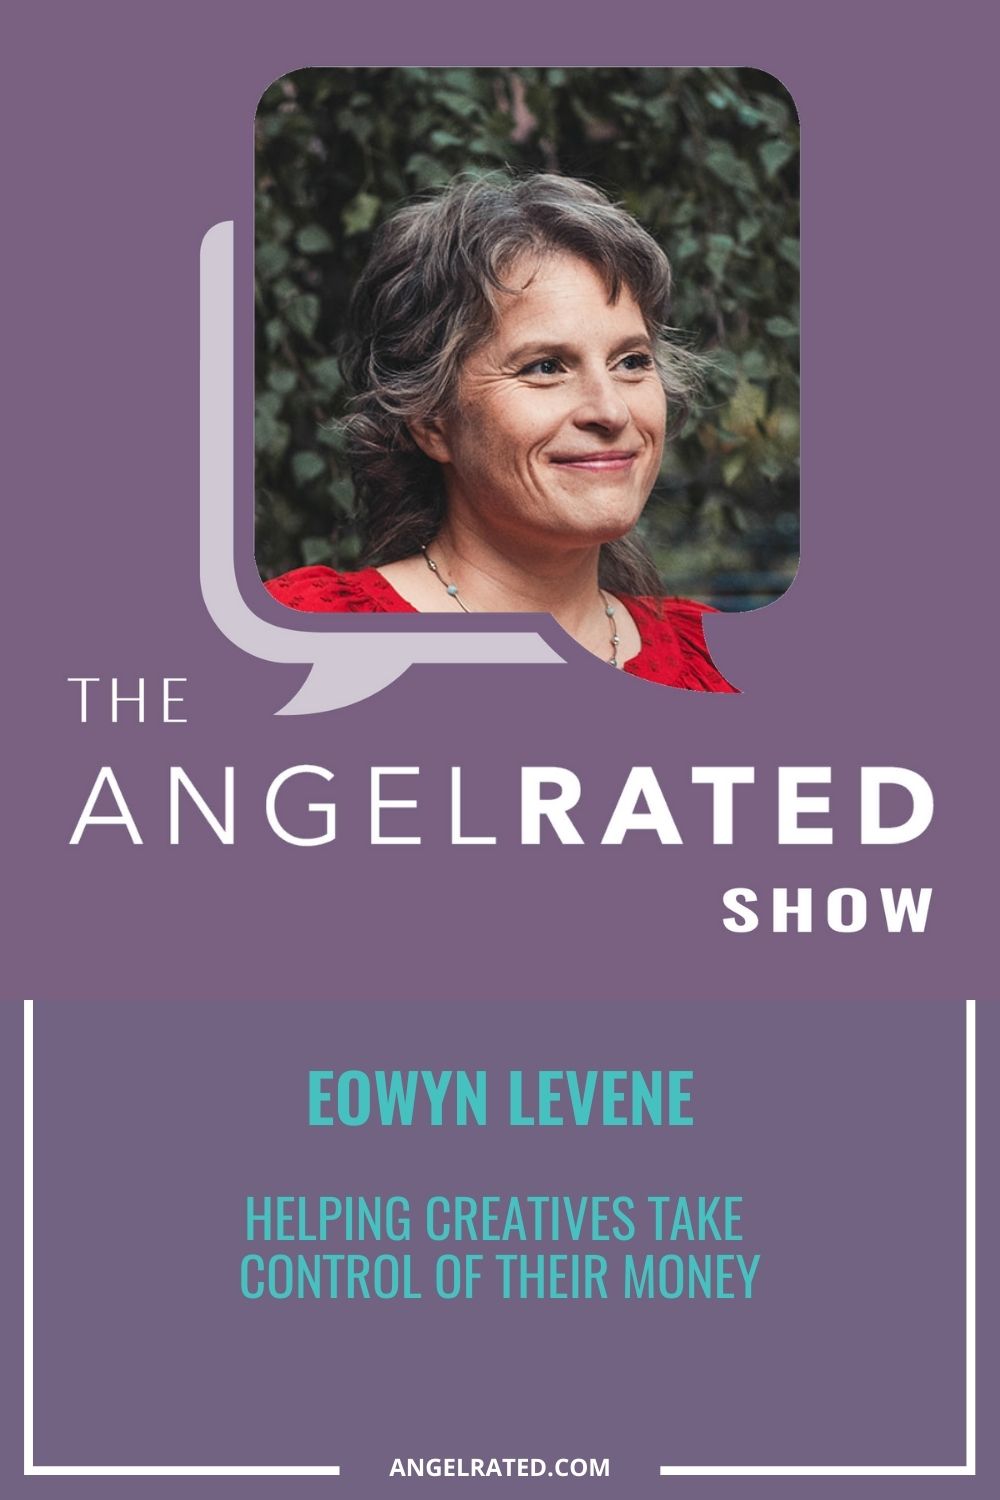 Eowyn Levene: Helping creatives take control of their money